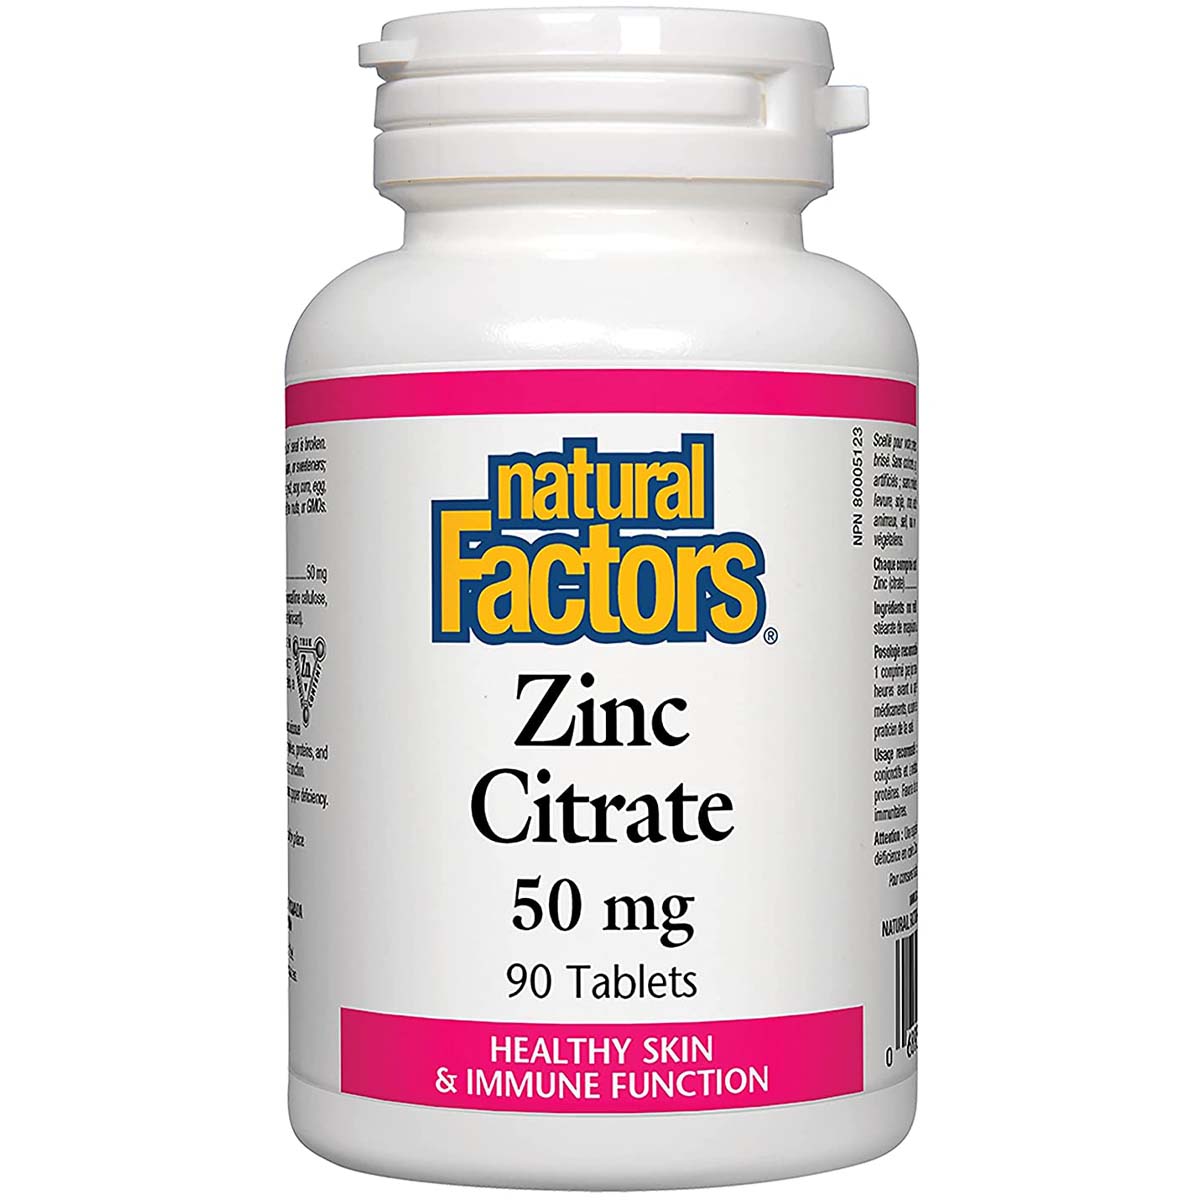 Natural Factors Zinc Citrate, 90 Tablets, 50 mg